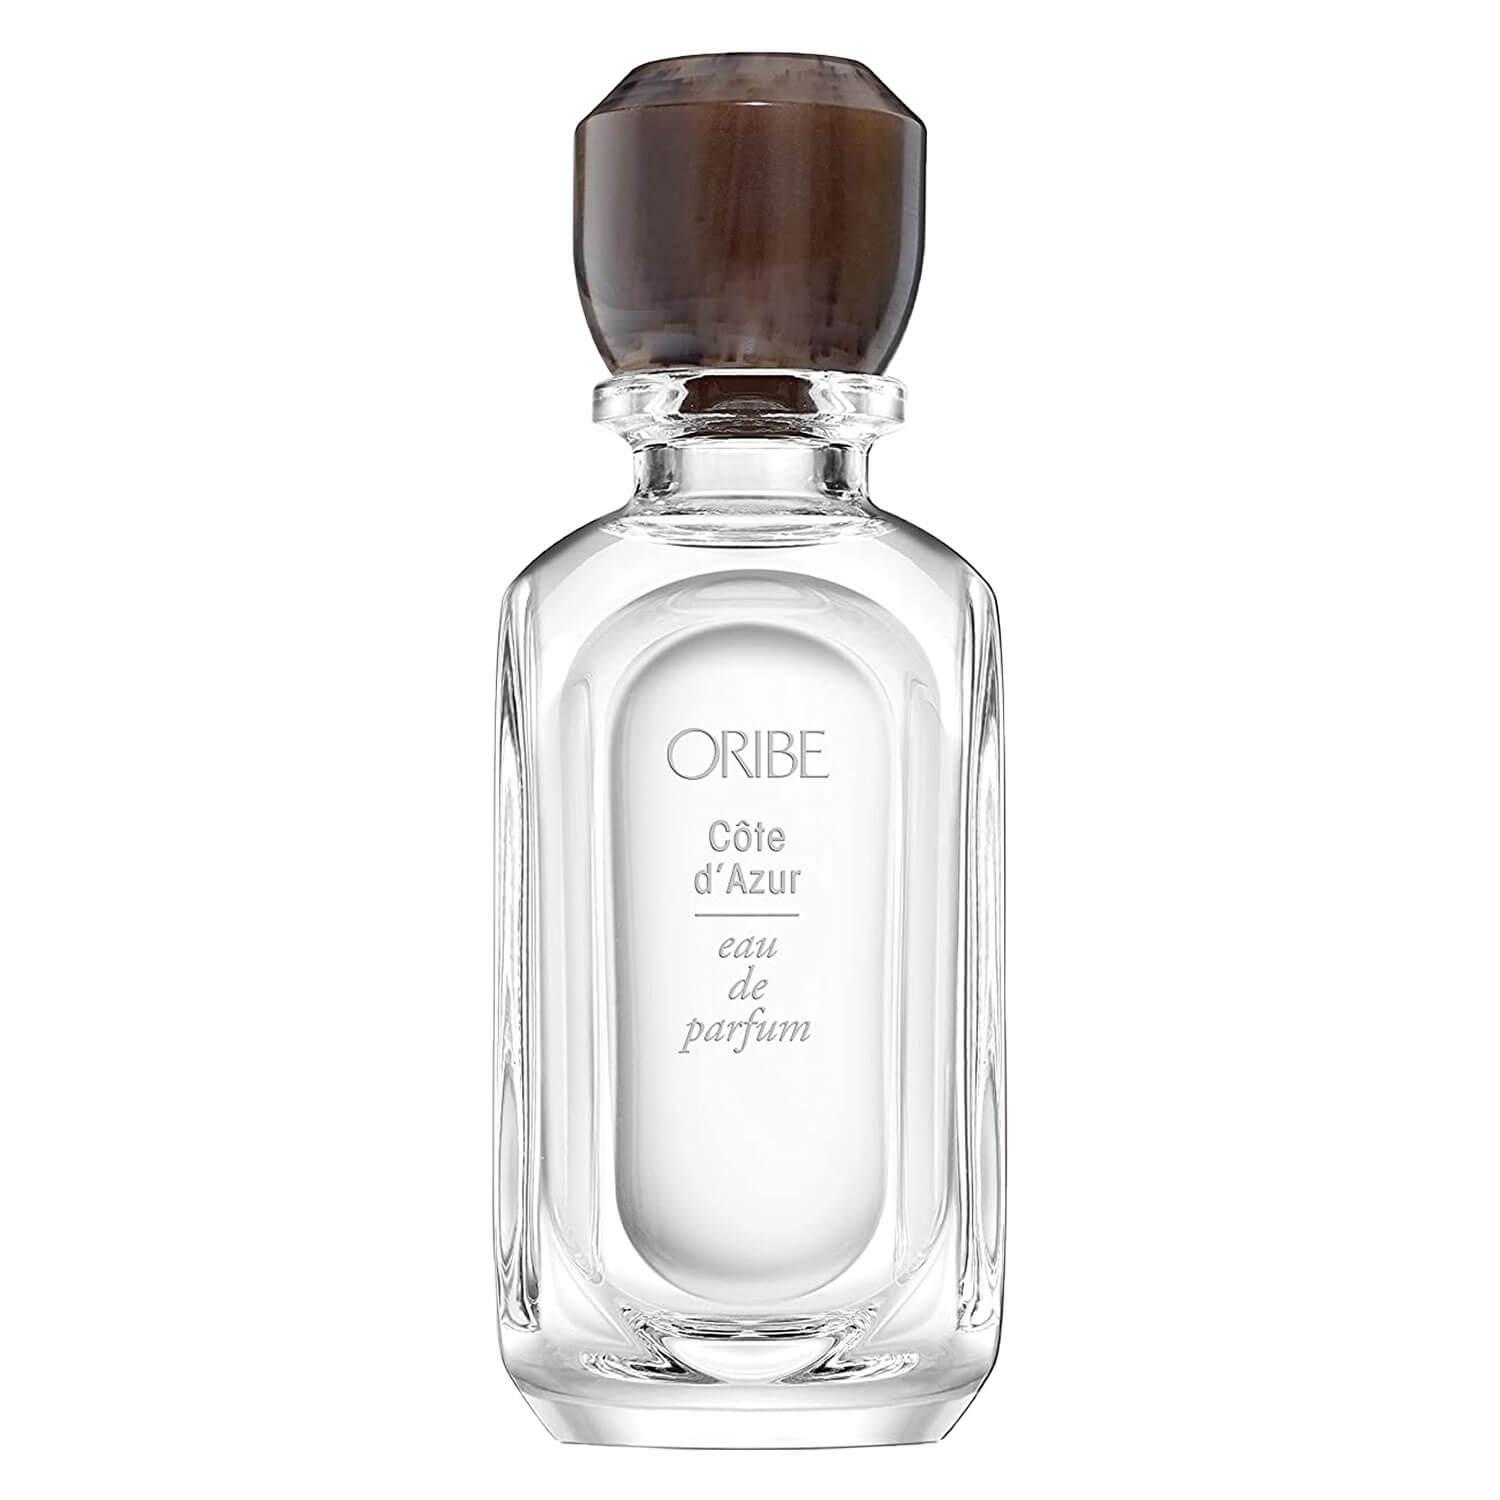 Oribe Scent - Côte d'Azur Eau de Parfum